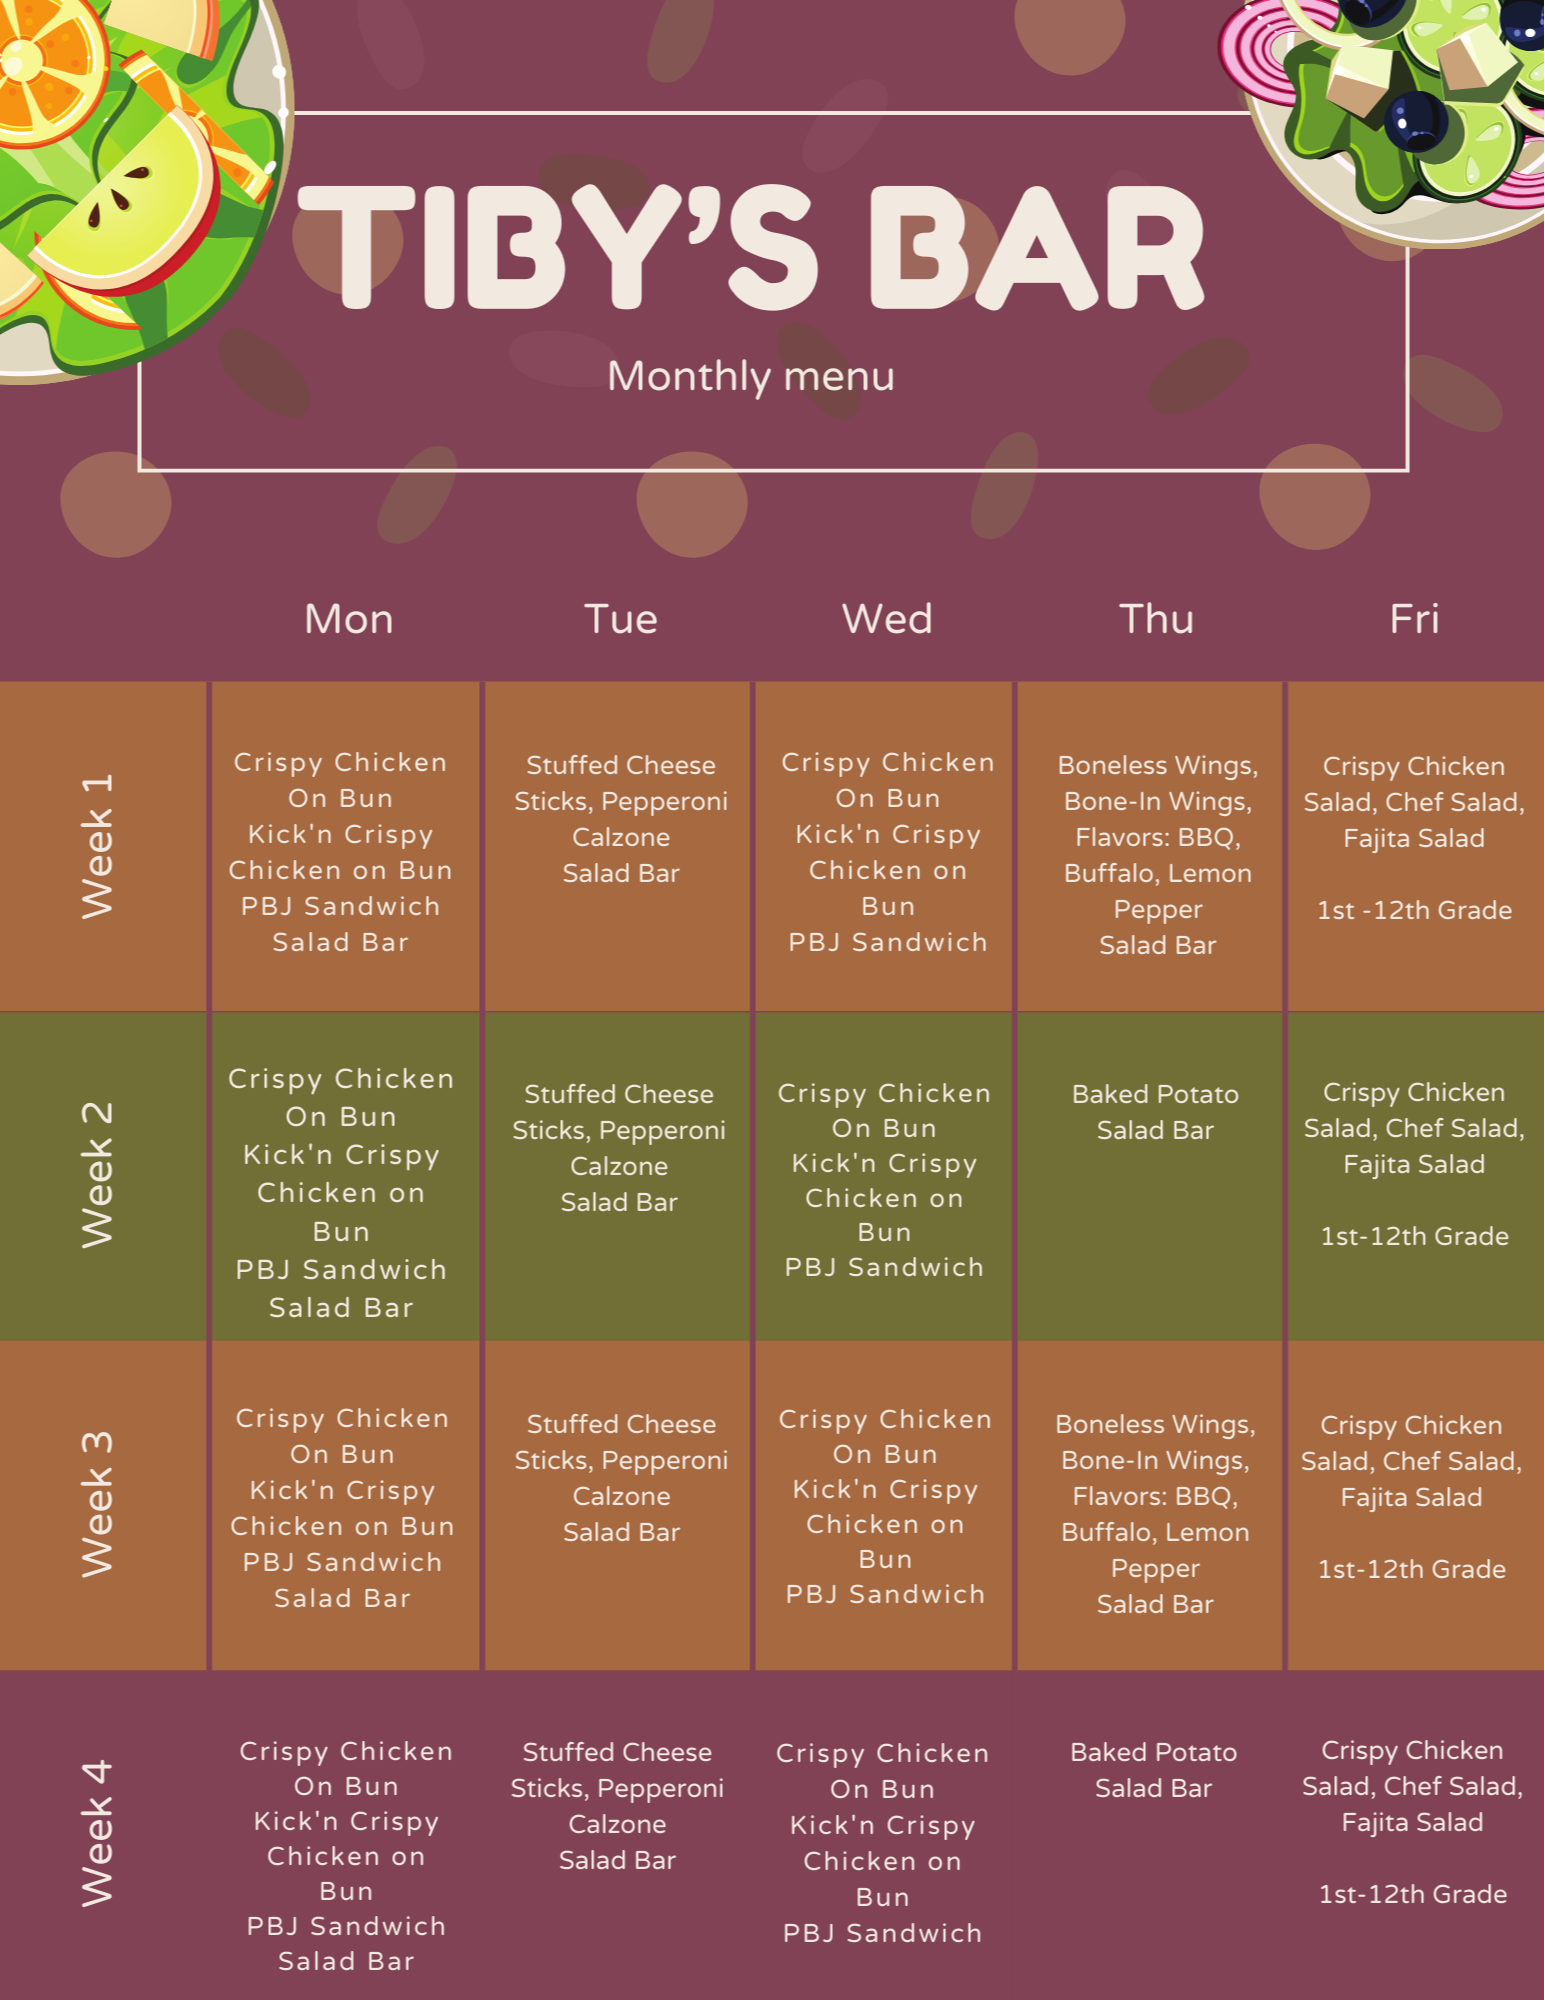 Tiby's Bar